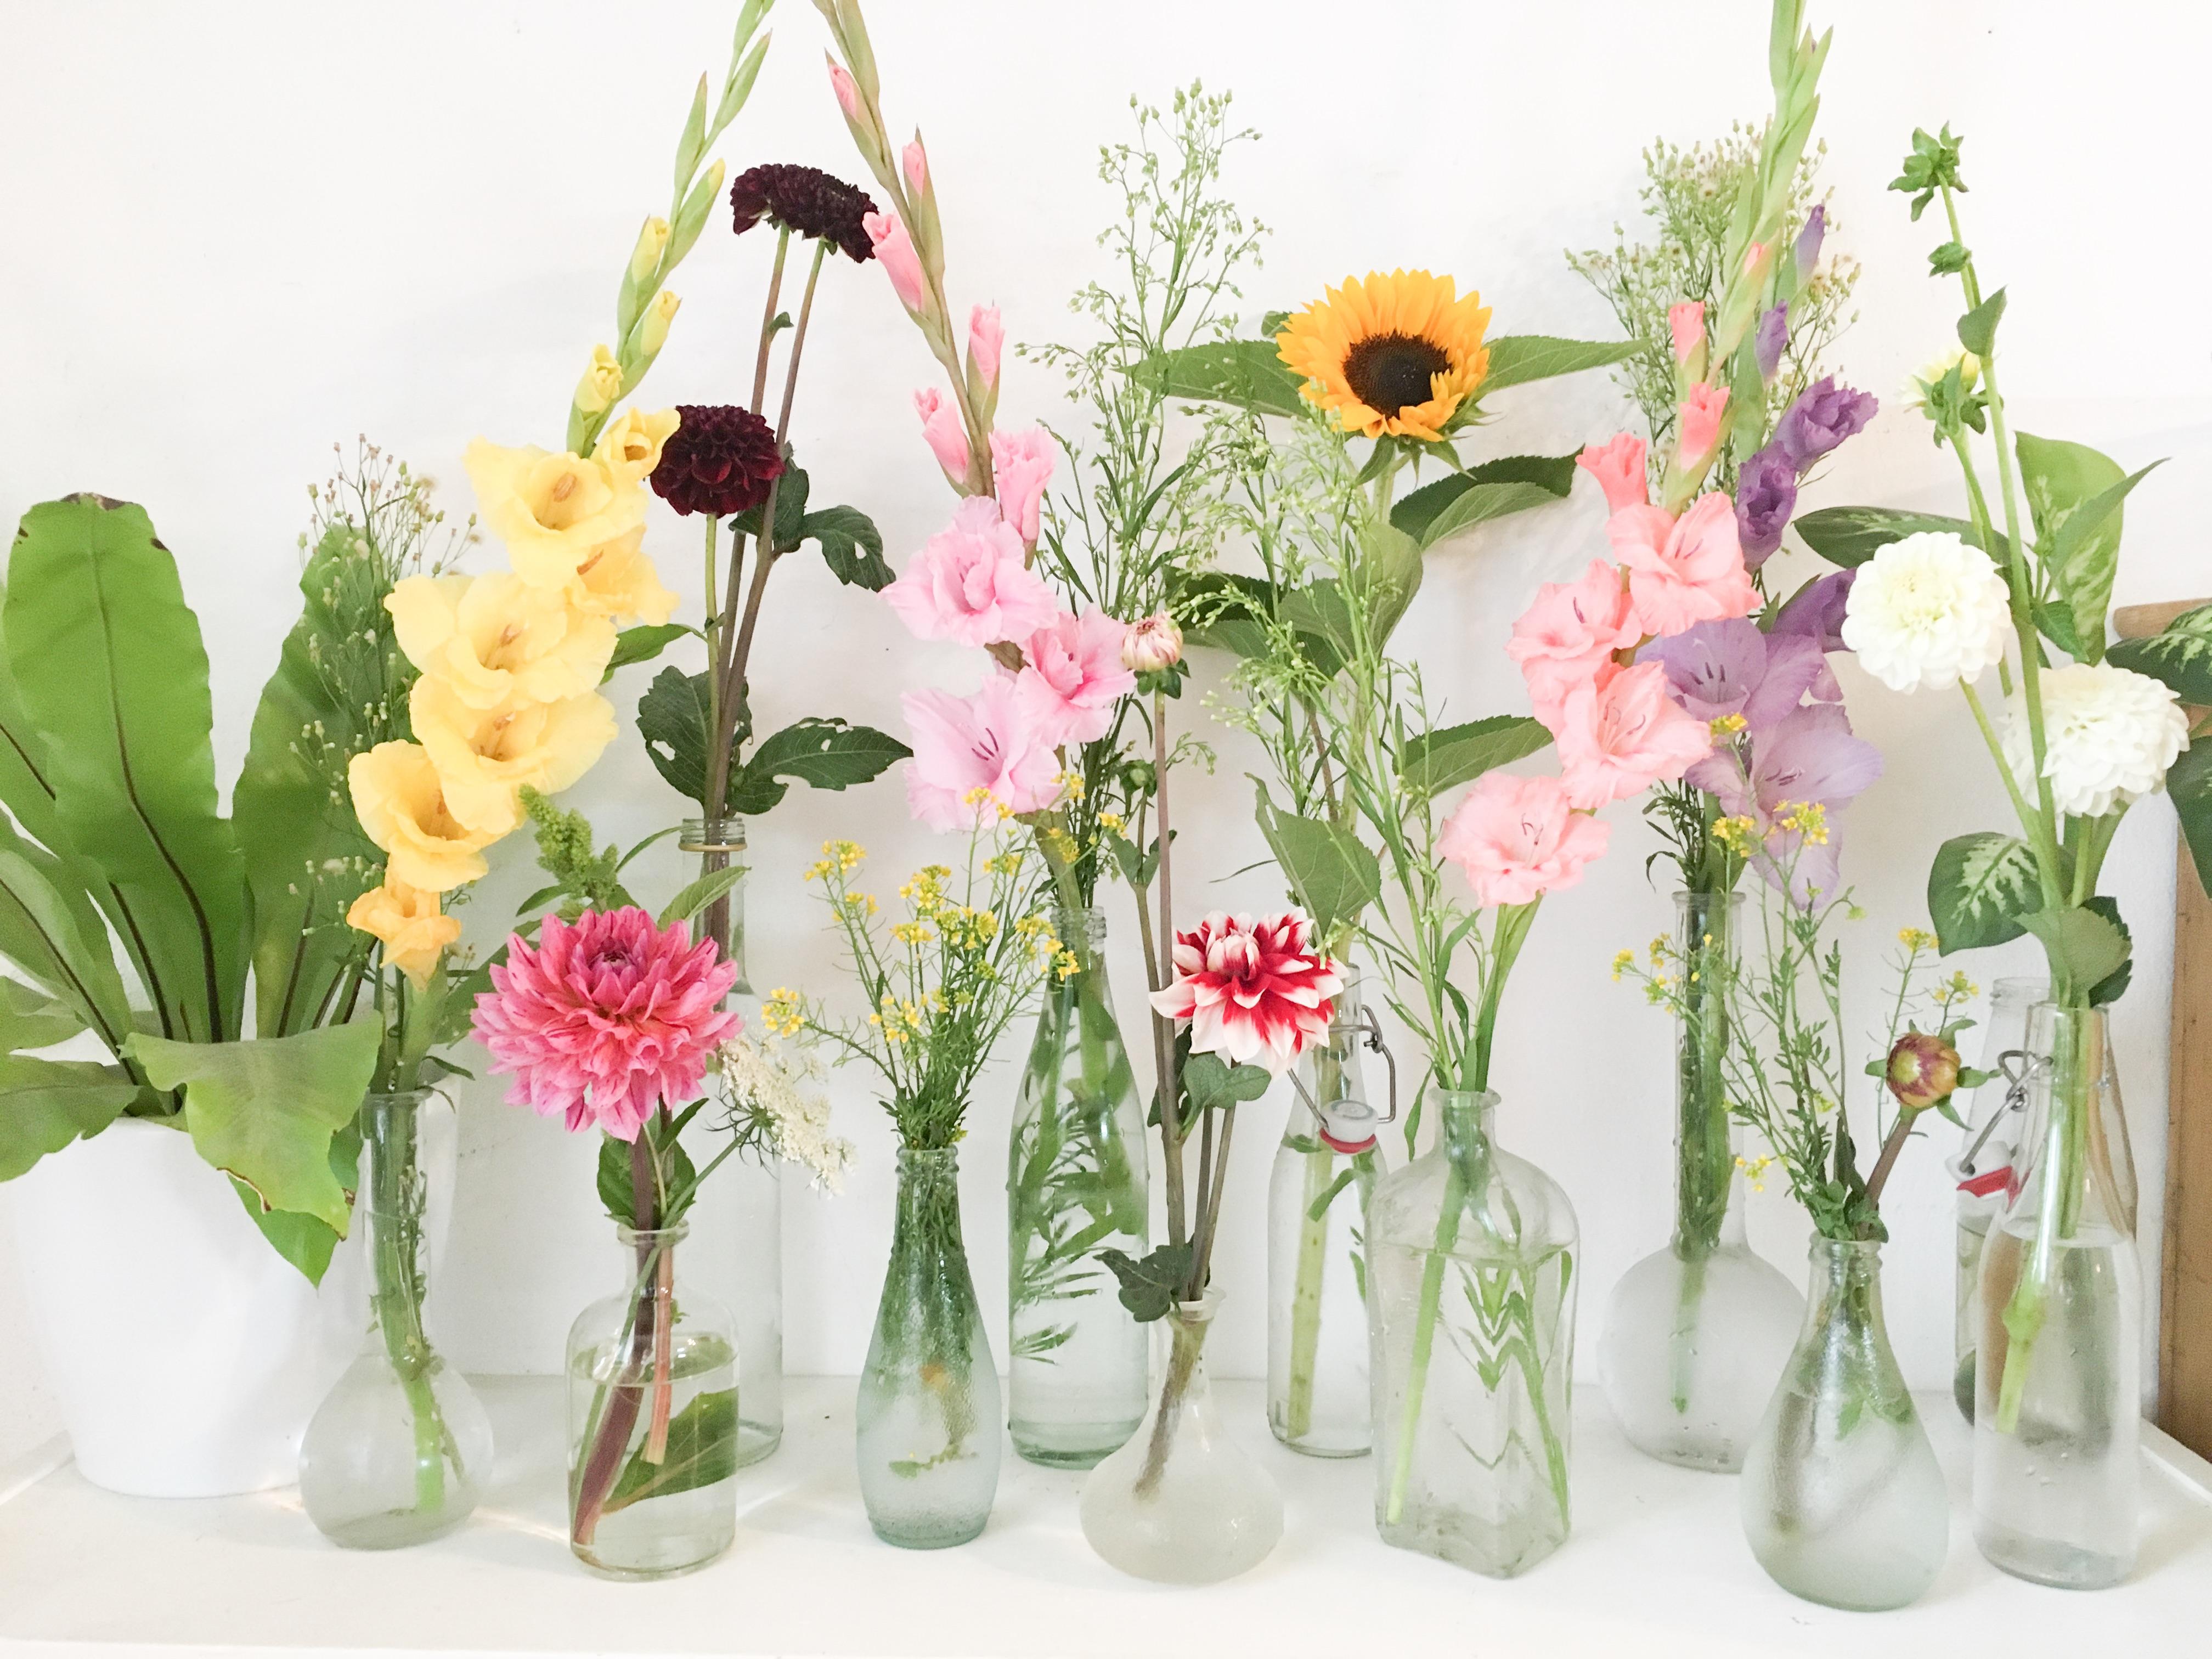 Sommerblumen 🌸🌺🌻 
#blumen #flowers #deko 